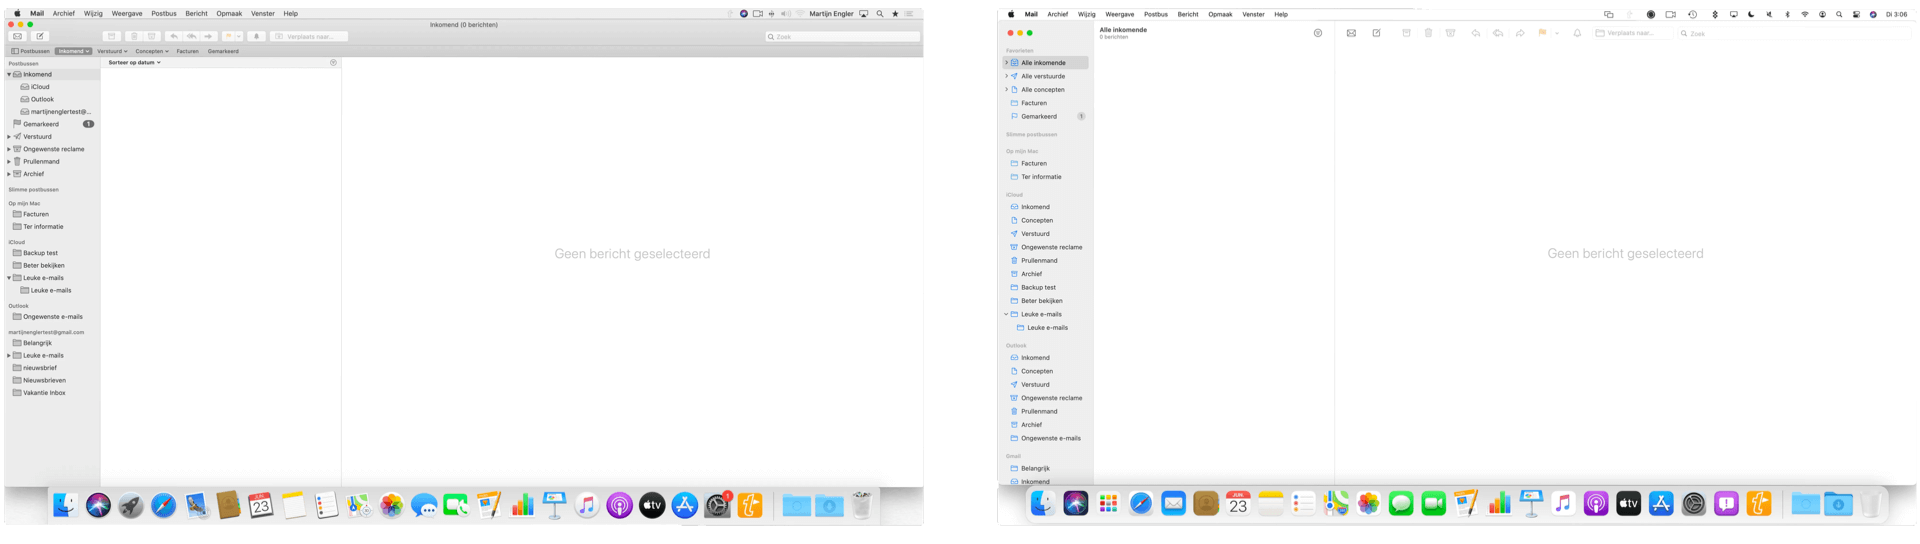 Je ziet hier dat de menubalk anders is, de iconen in het Dock anders zijn, en ook Mail heeft een andere uitstraling